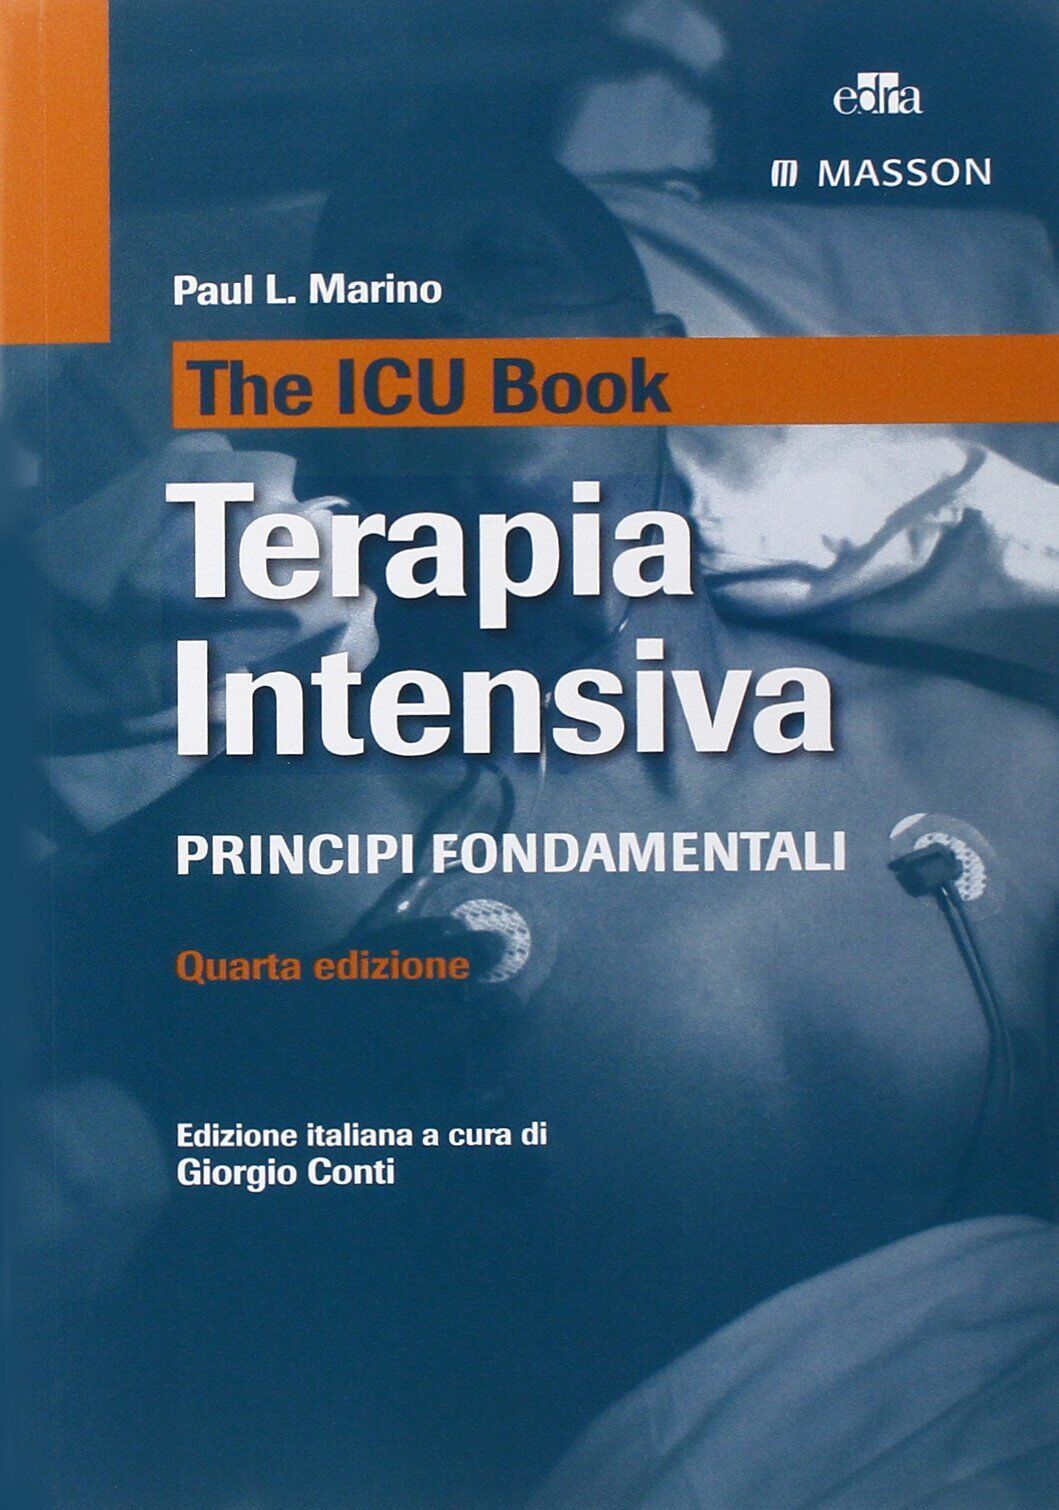 The ICU book. Terapia intensiva - Paul L. Marino - Edra, 2014